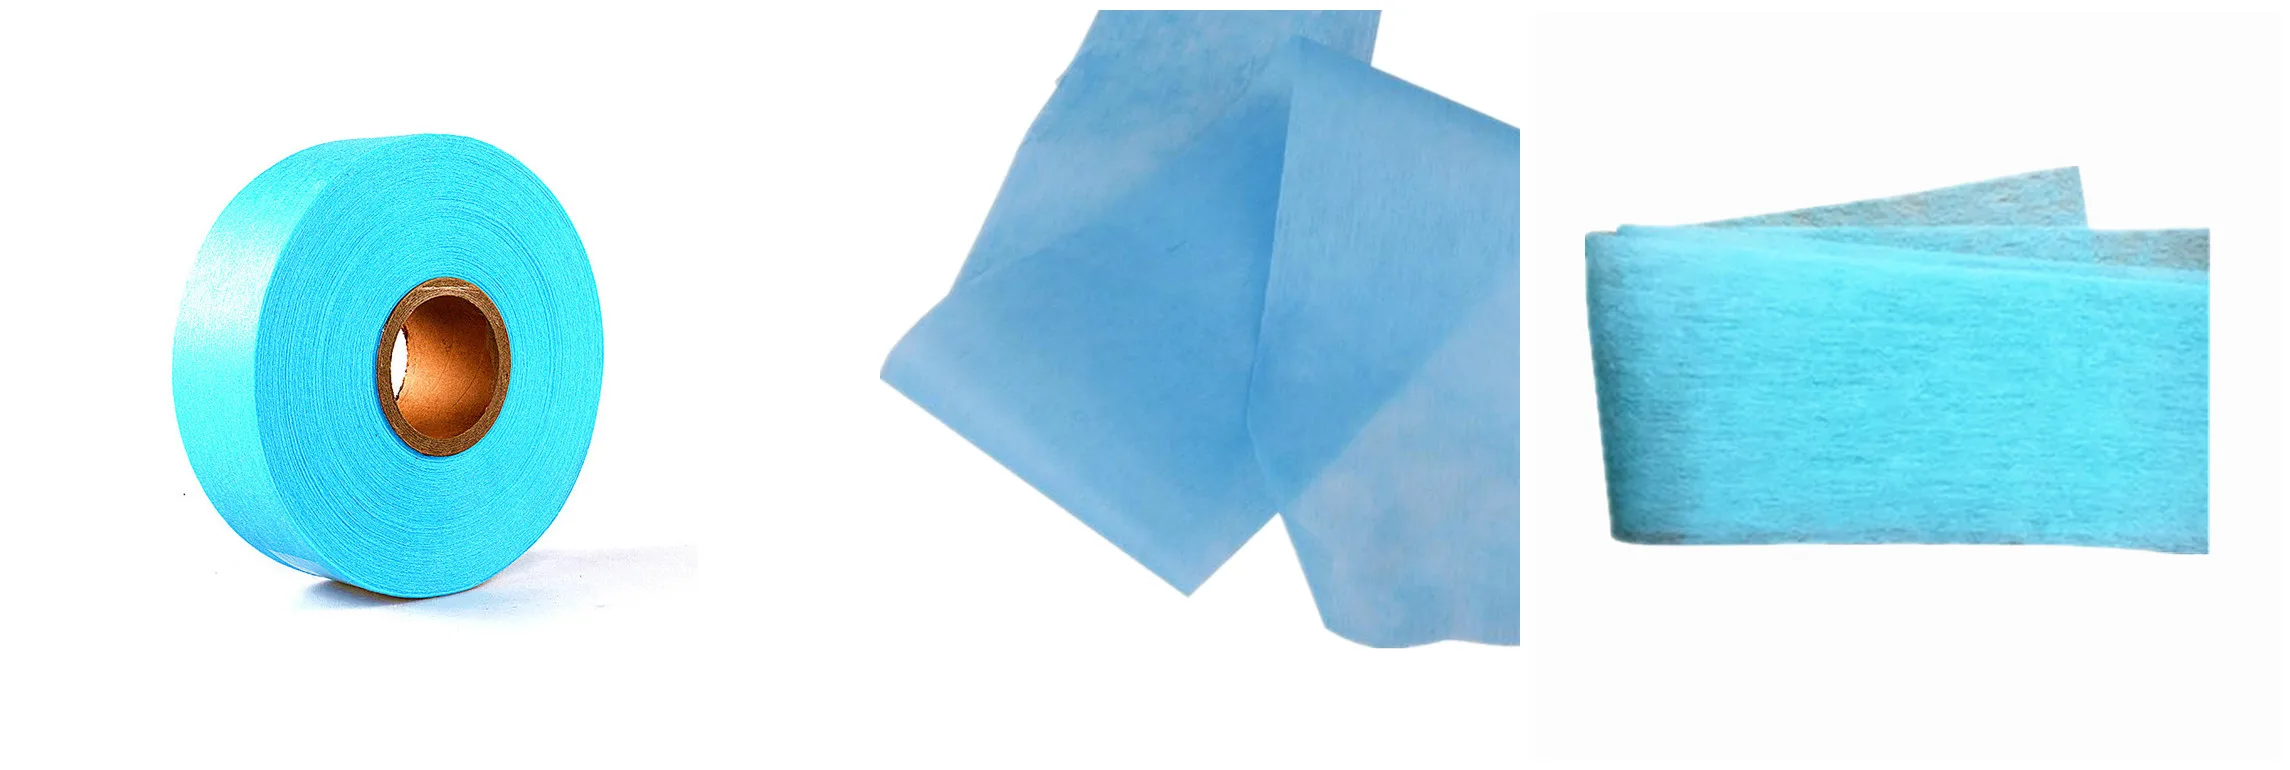 Gran pañal desechable ADL azul absorbente con tela no tejida